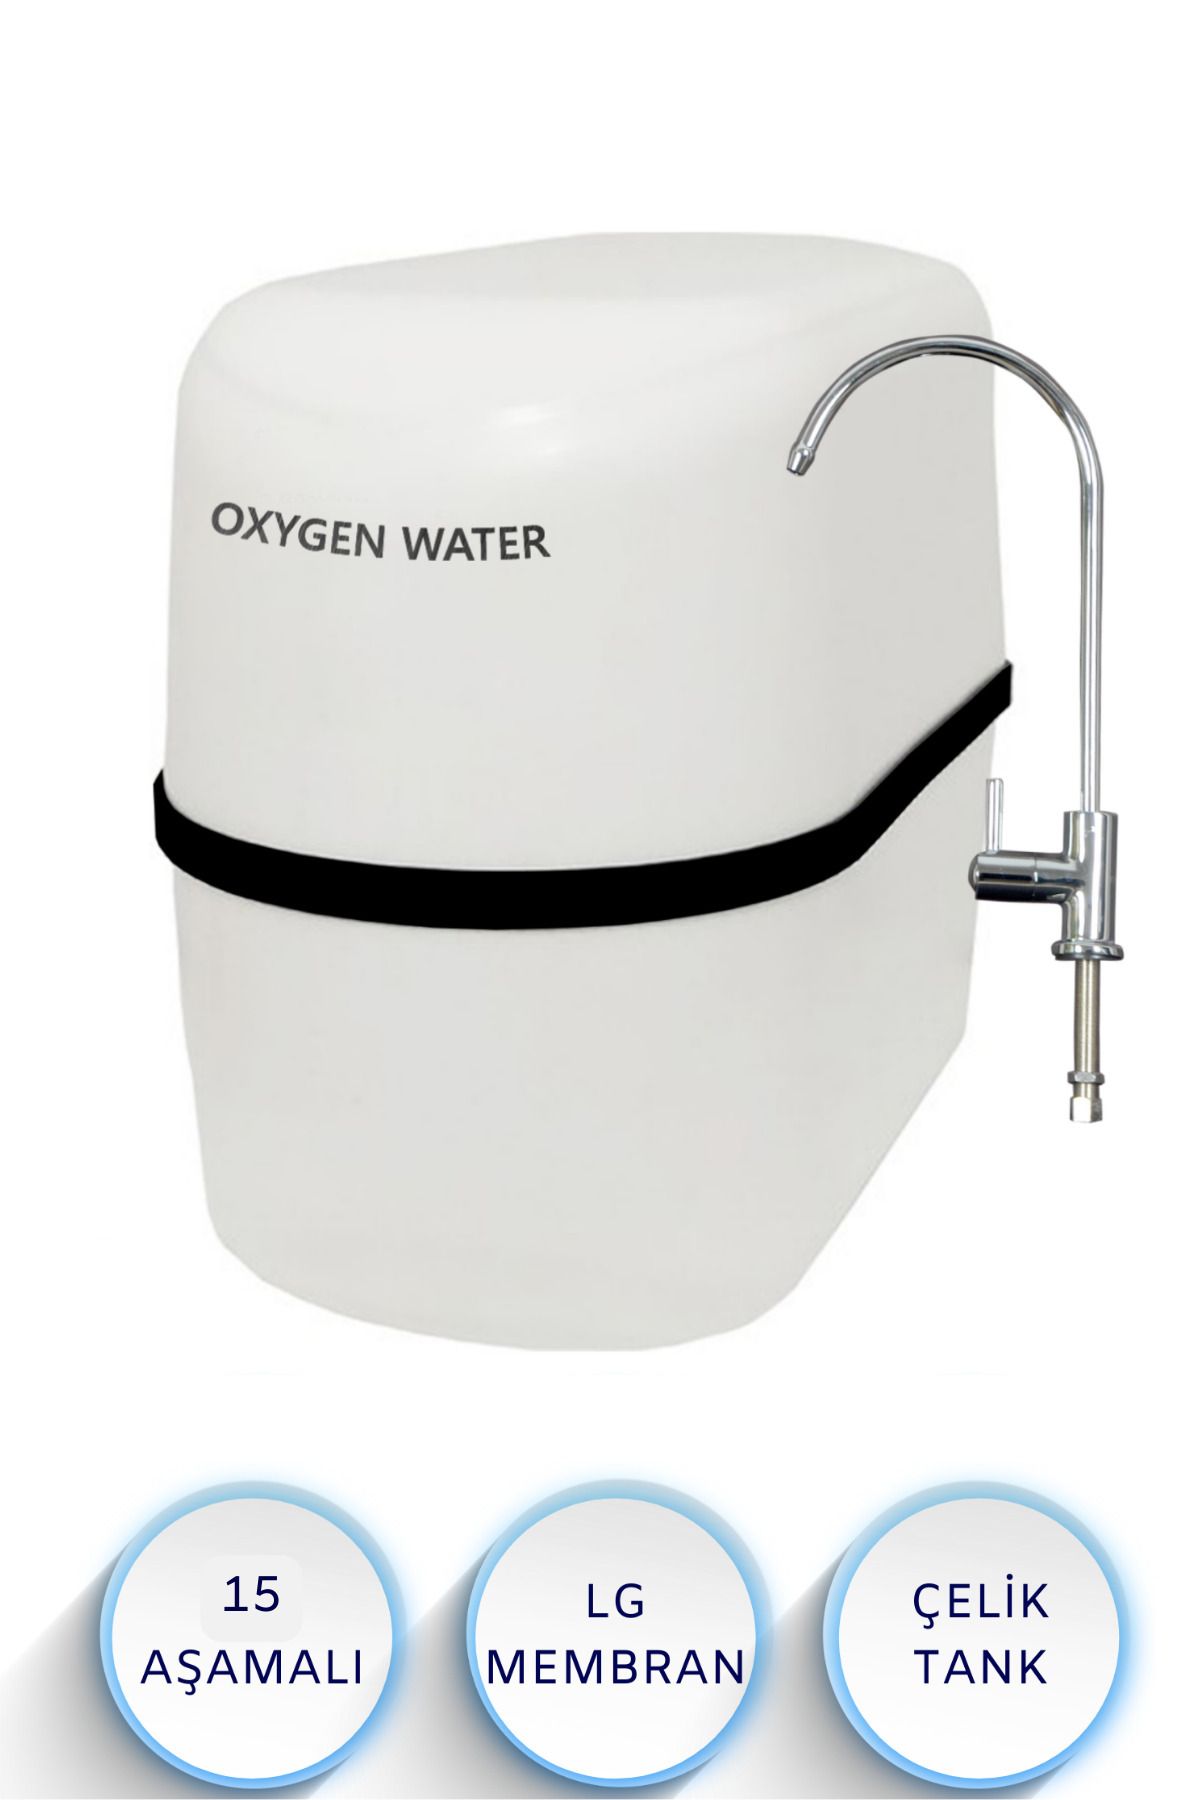 OXYGEN WATER Lg Membranlı 15 Aşamalı Ph Mineral Filtreli Su Arıtma Cihazı